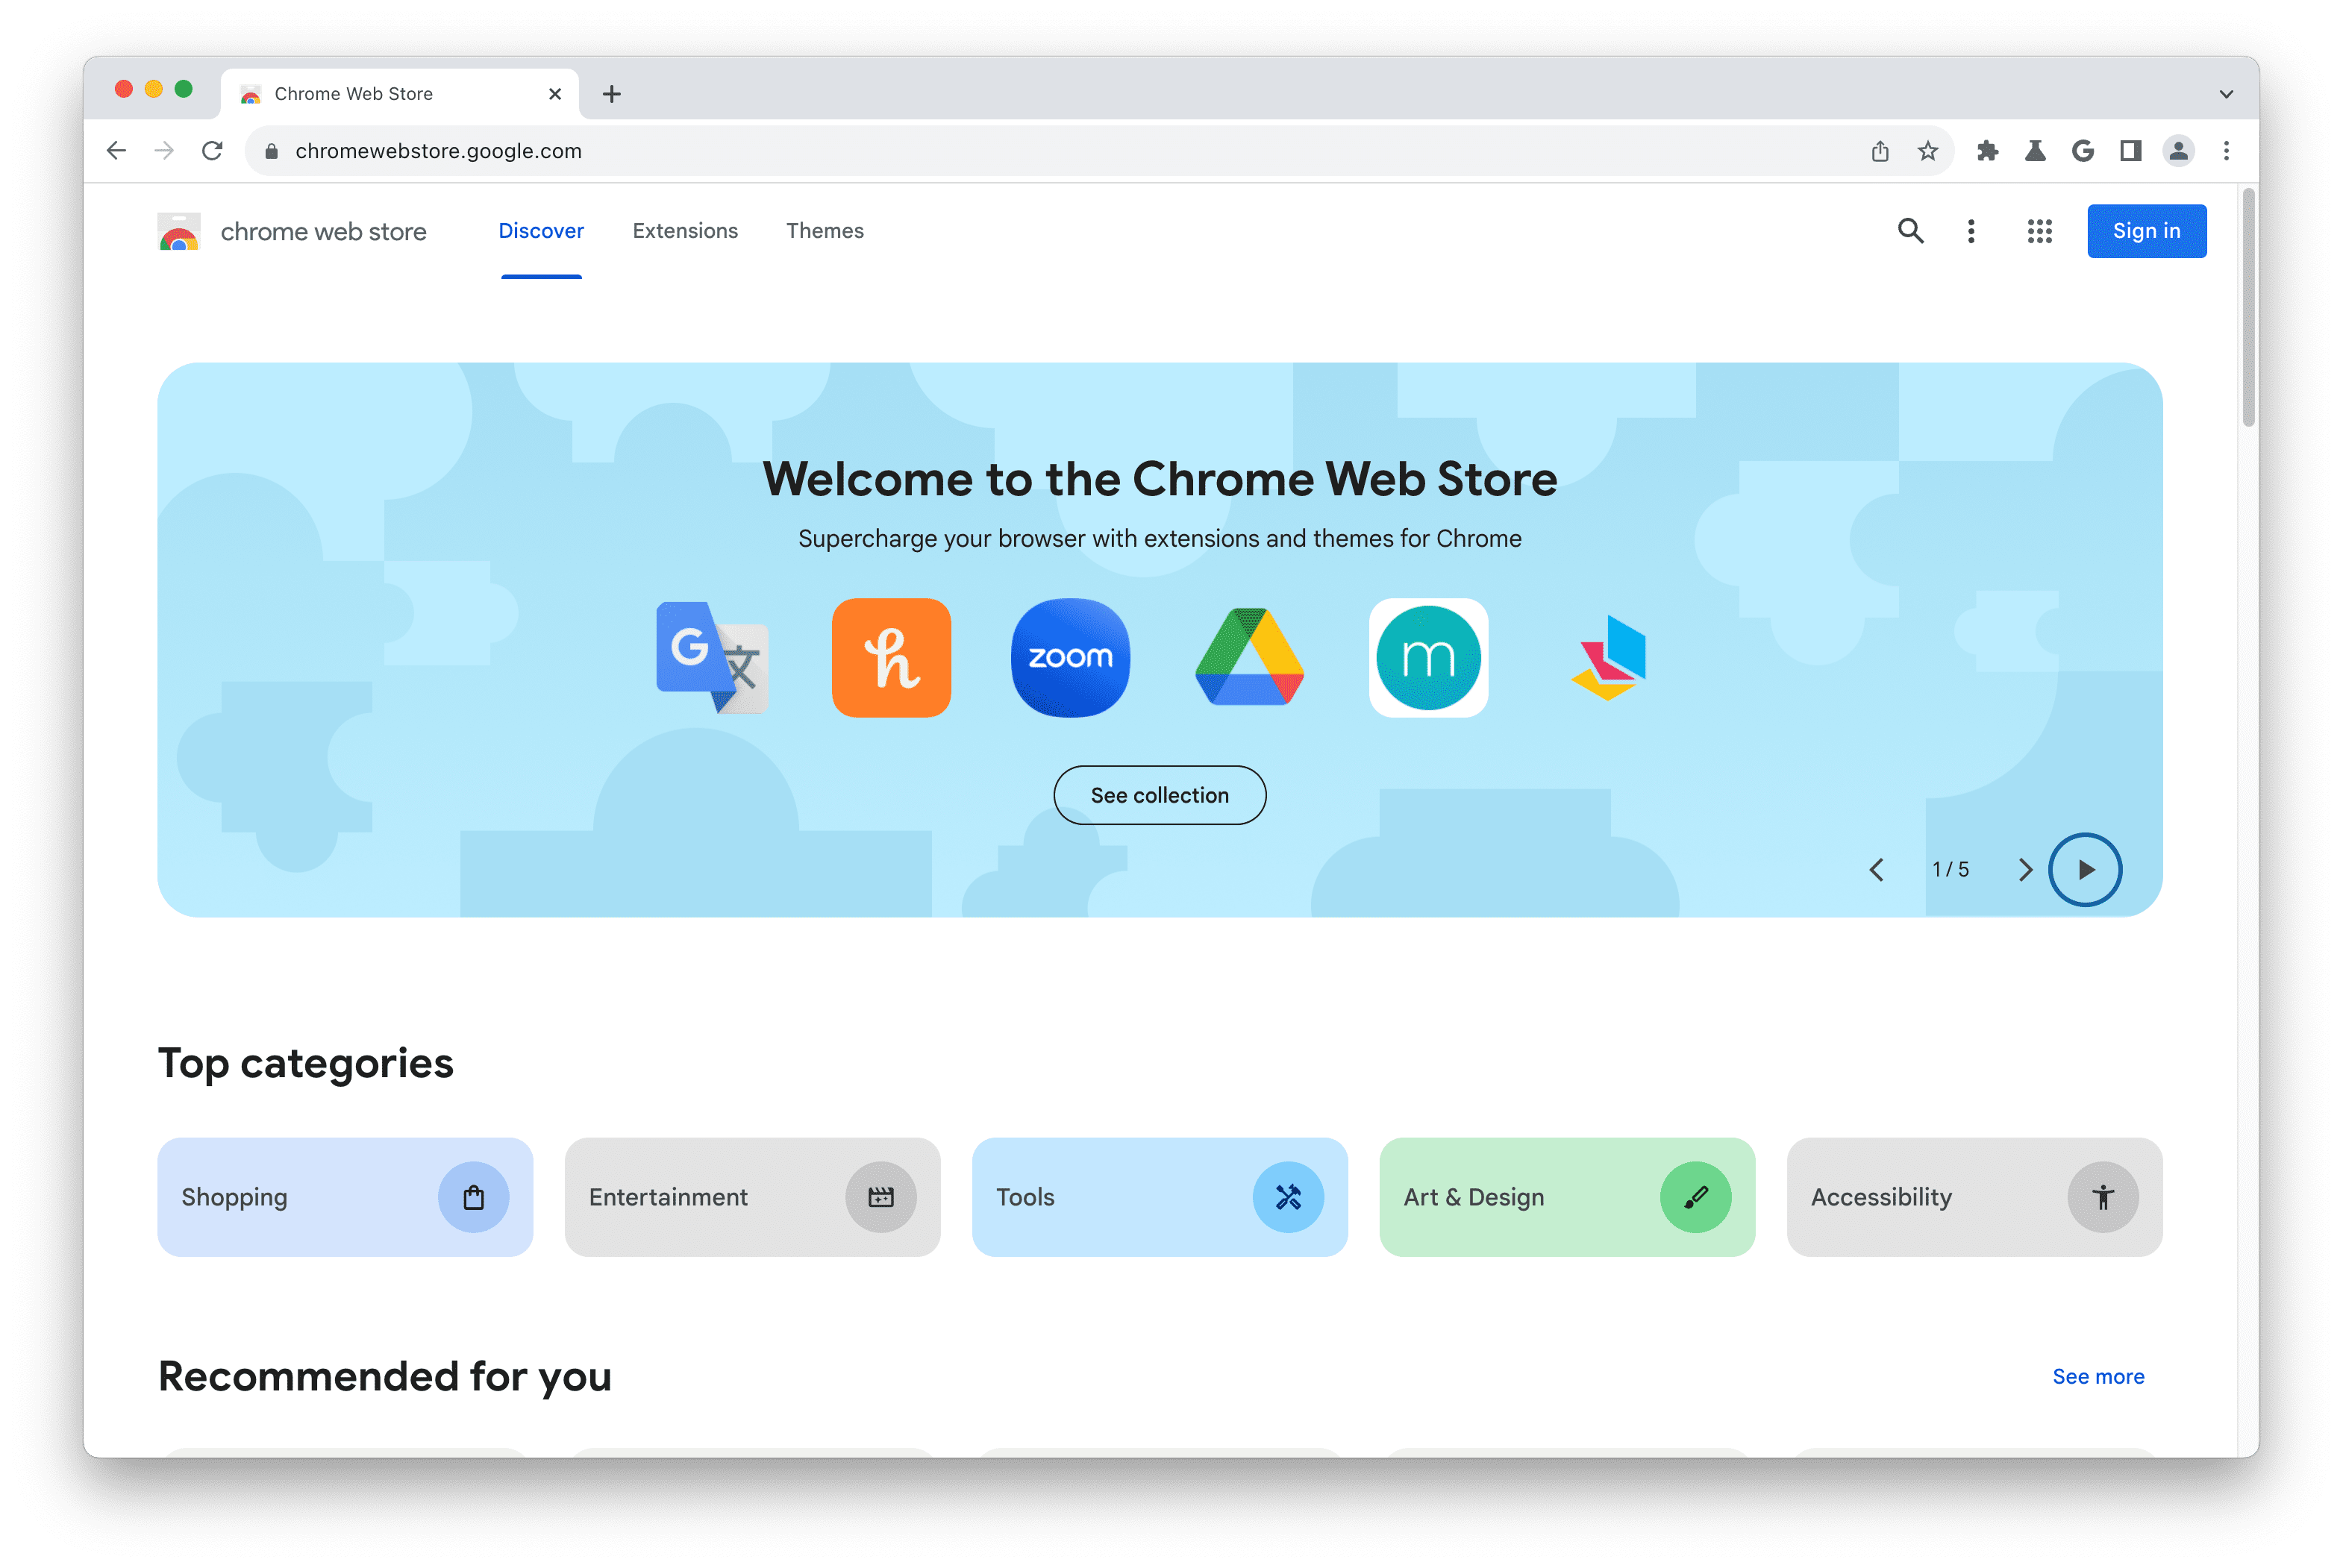 צילום מסך של דף הבית בחנות האינטרנט של Chrome.